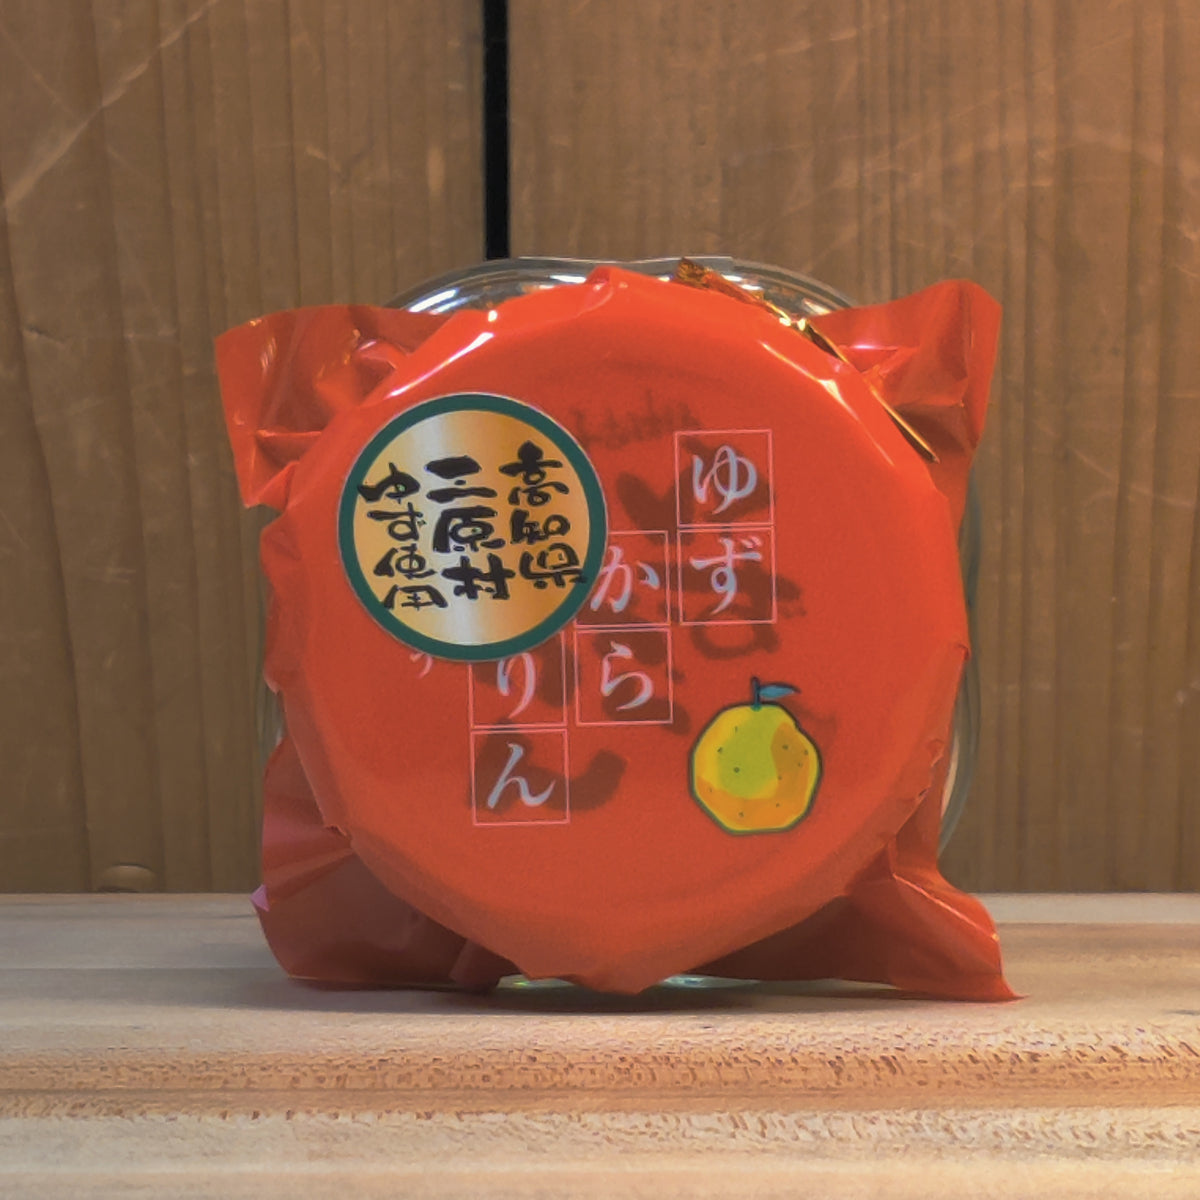 Yuzukararin (Citrus Pepper Condiment) - 35g